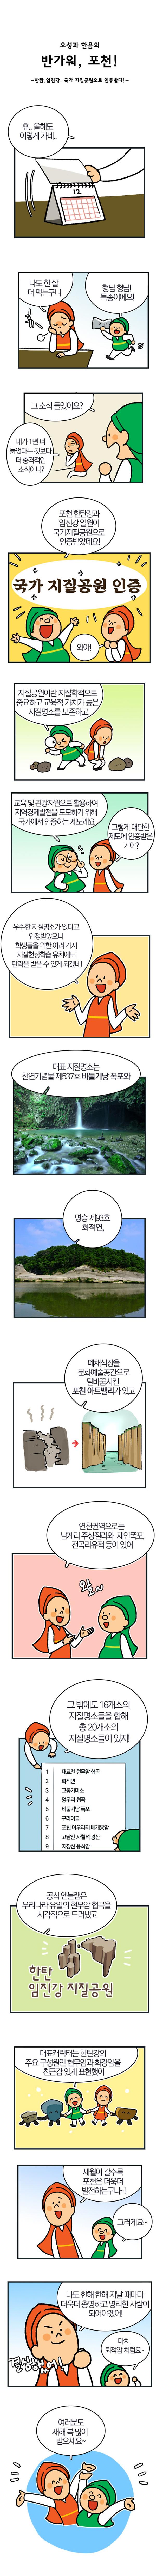 한탄강 임진강 지질공원 인증 소식1